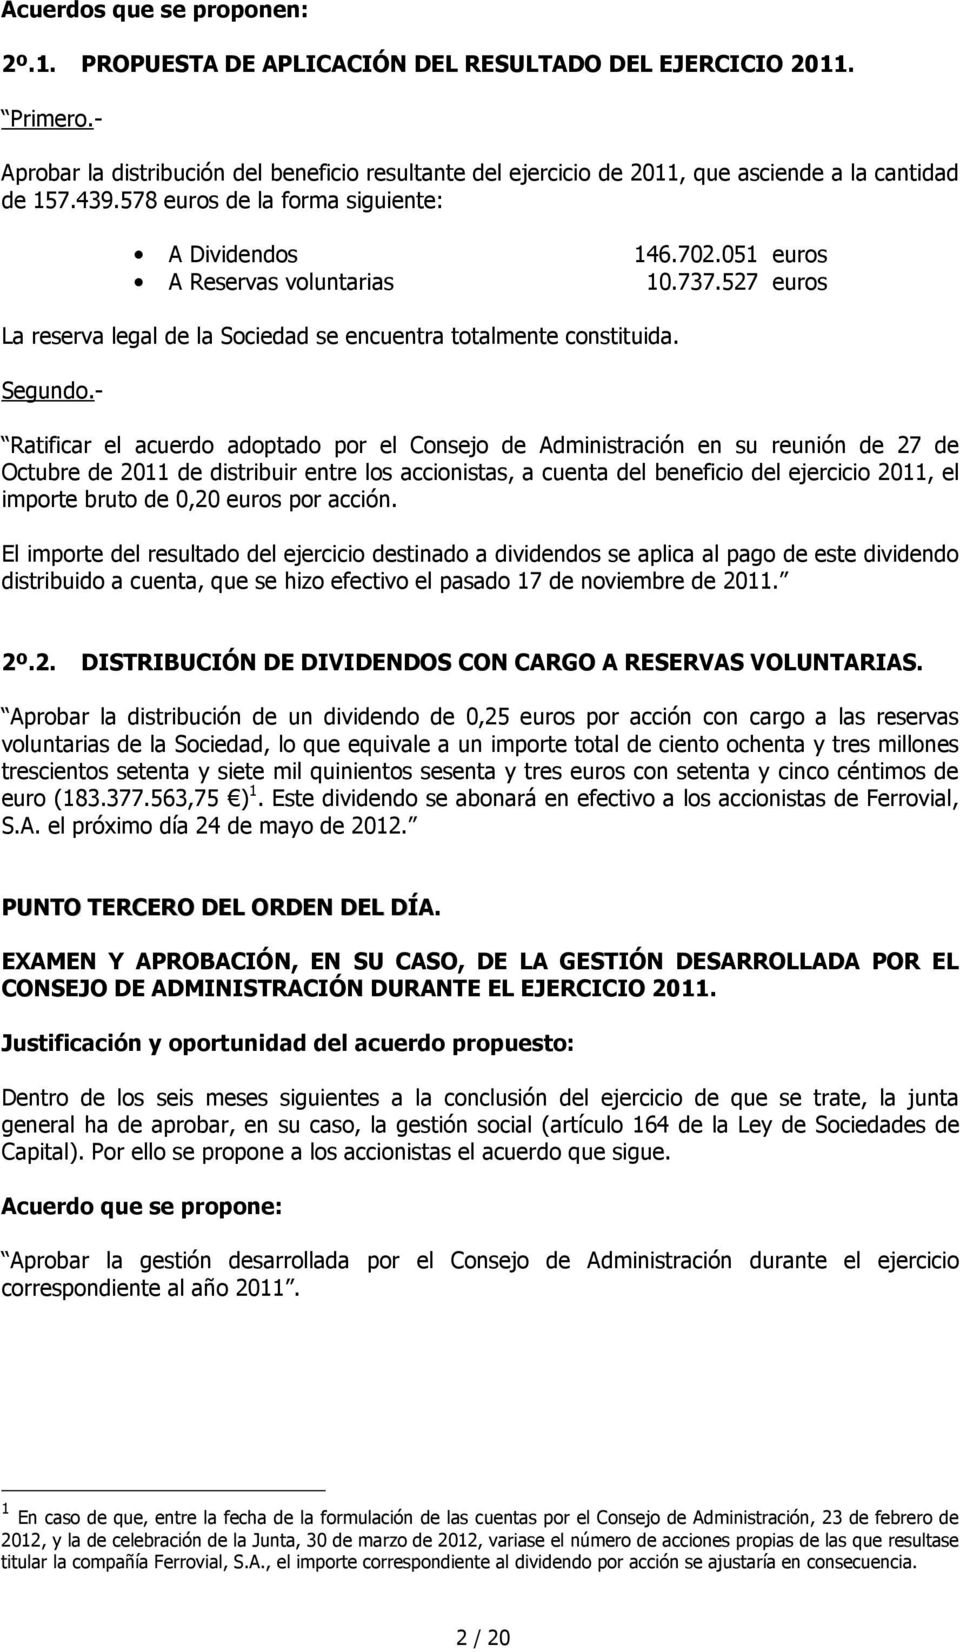 051 euros A Reservas voluntarias 10.737.527 euros La reserva legal de la Sociedad se encuentra totalmente constituida. Segundo.